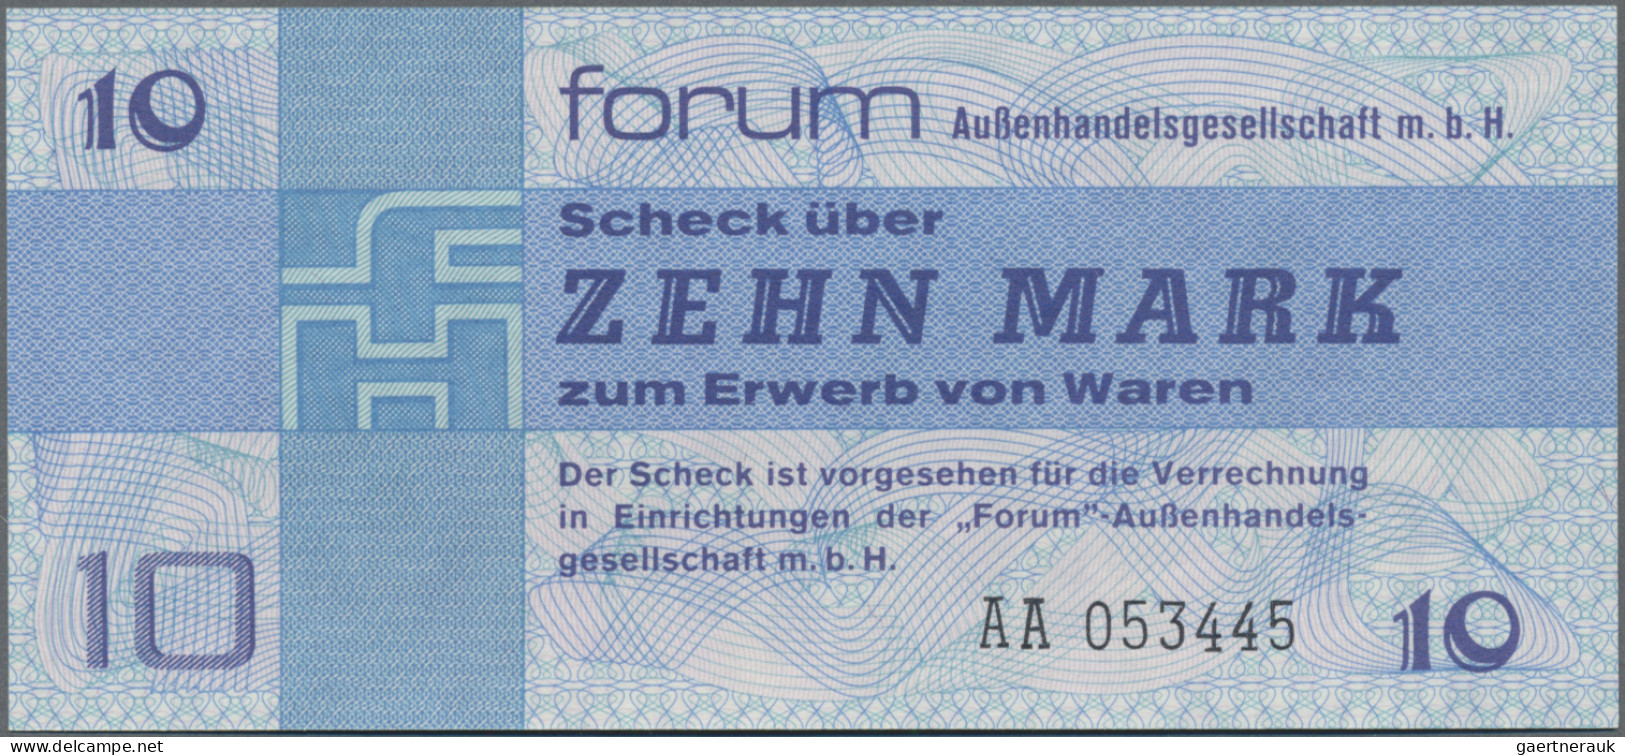 Deutschland - DDR: Forum-Außenhandelsgesellschaft m.b.H., Serie 1979, kompletter